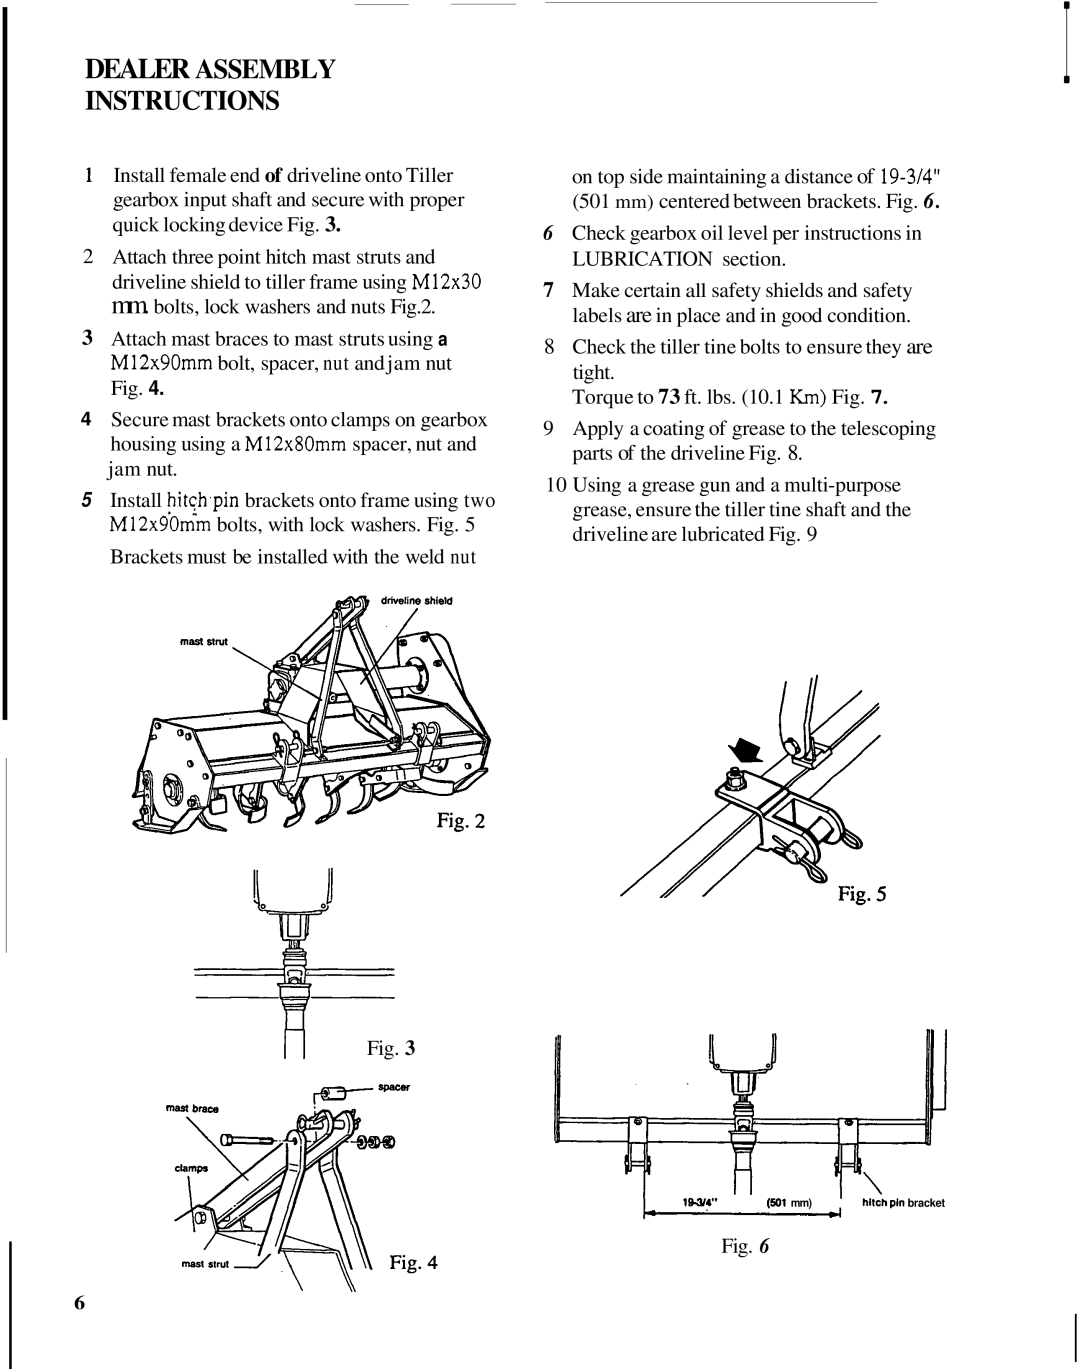 Honda Power Equipment TL5040 manual Dealer Assembly Instructions 